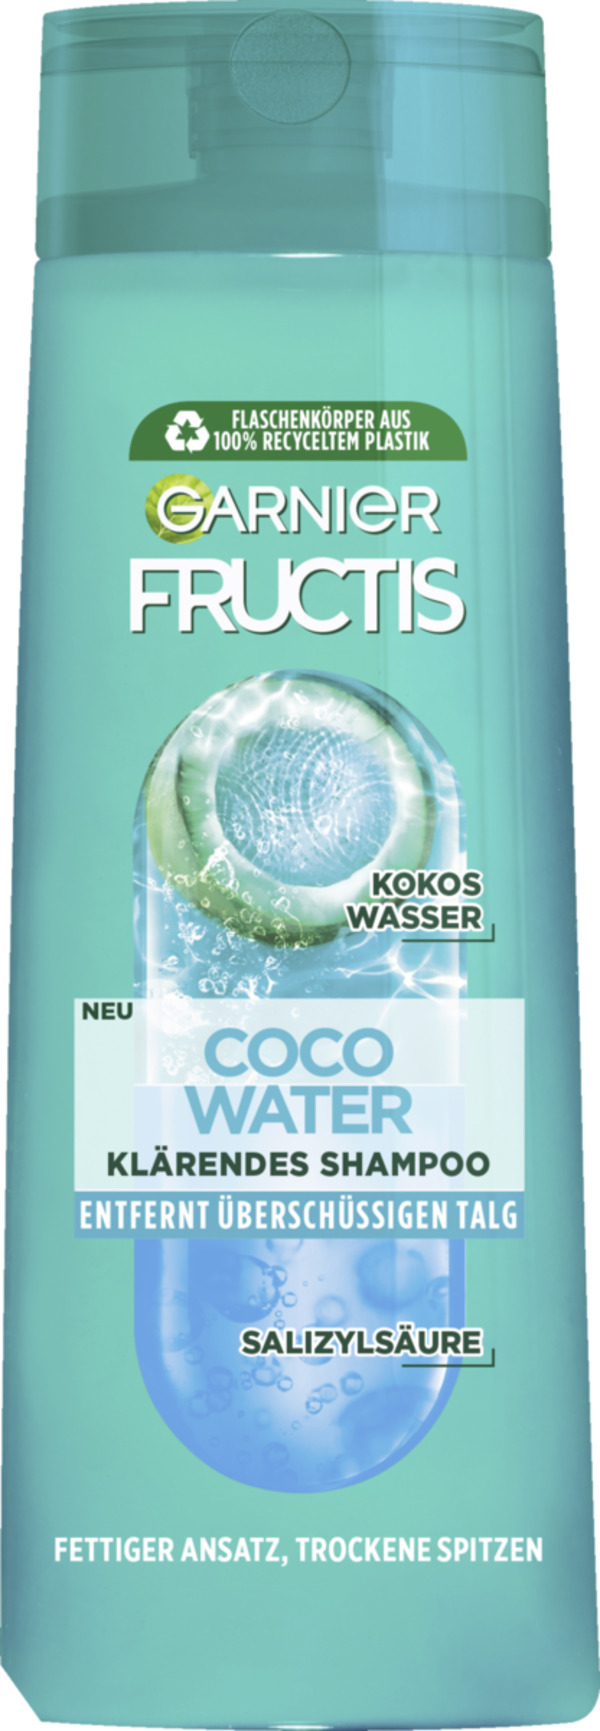 Bild 1 von Garnier Fructis Coco Water klärendes Shampoo